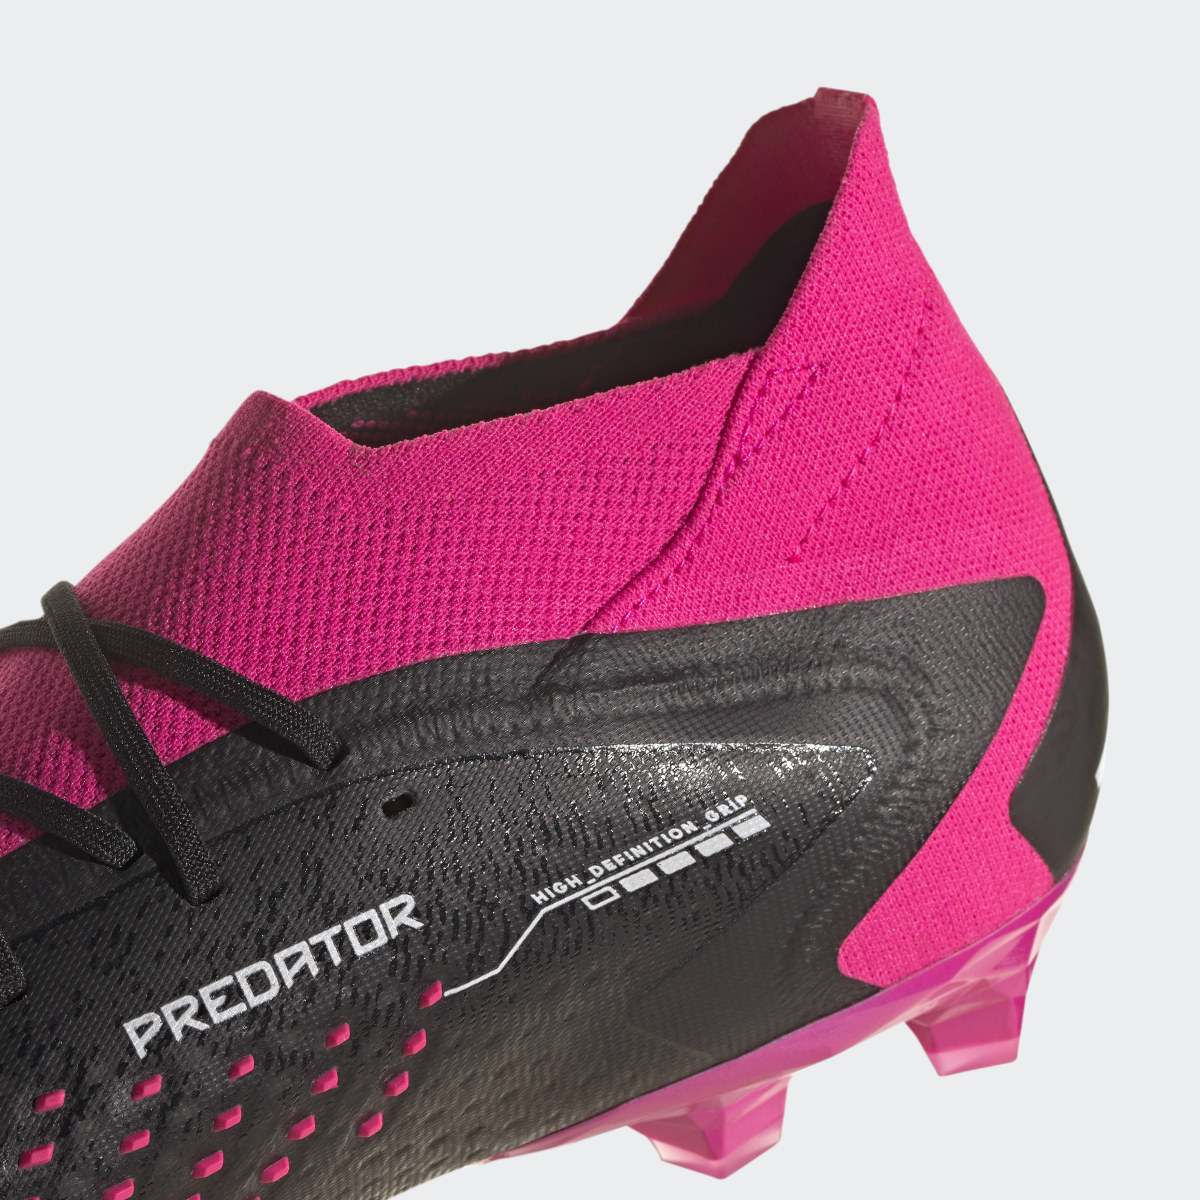 Adidas Predator Accuracy.1 Artificial Grass Boots. 4